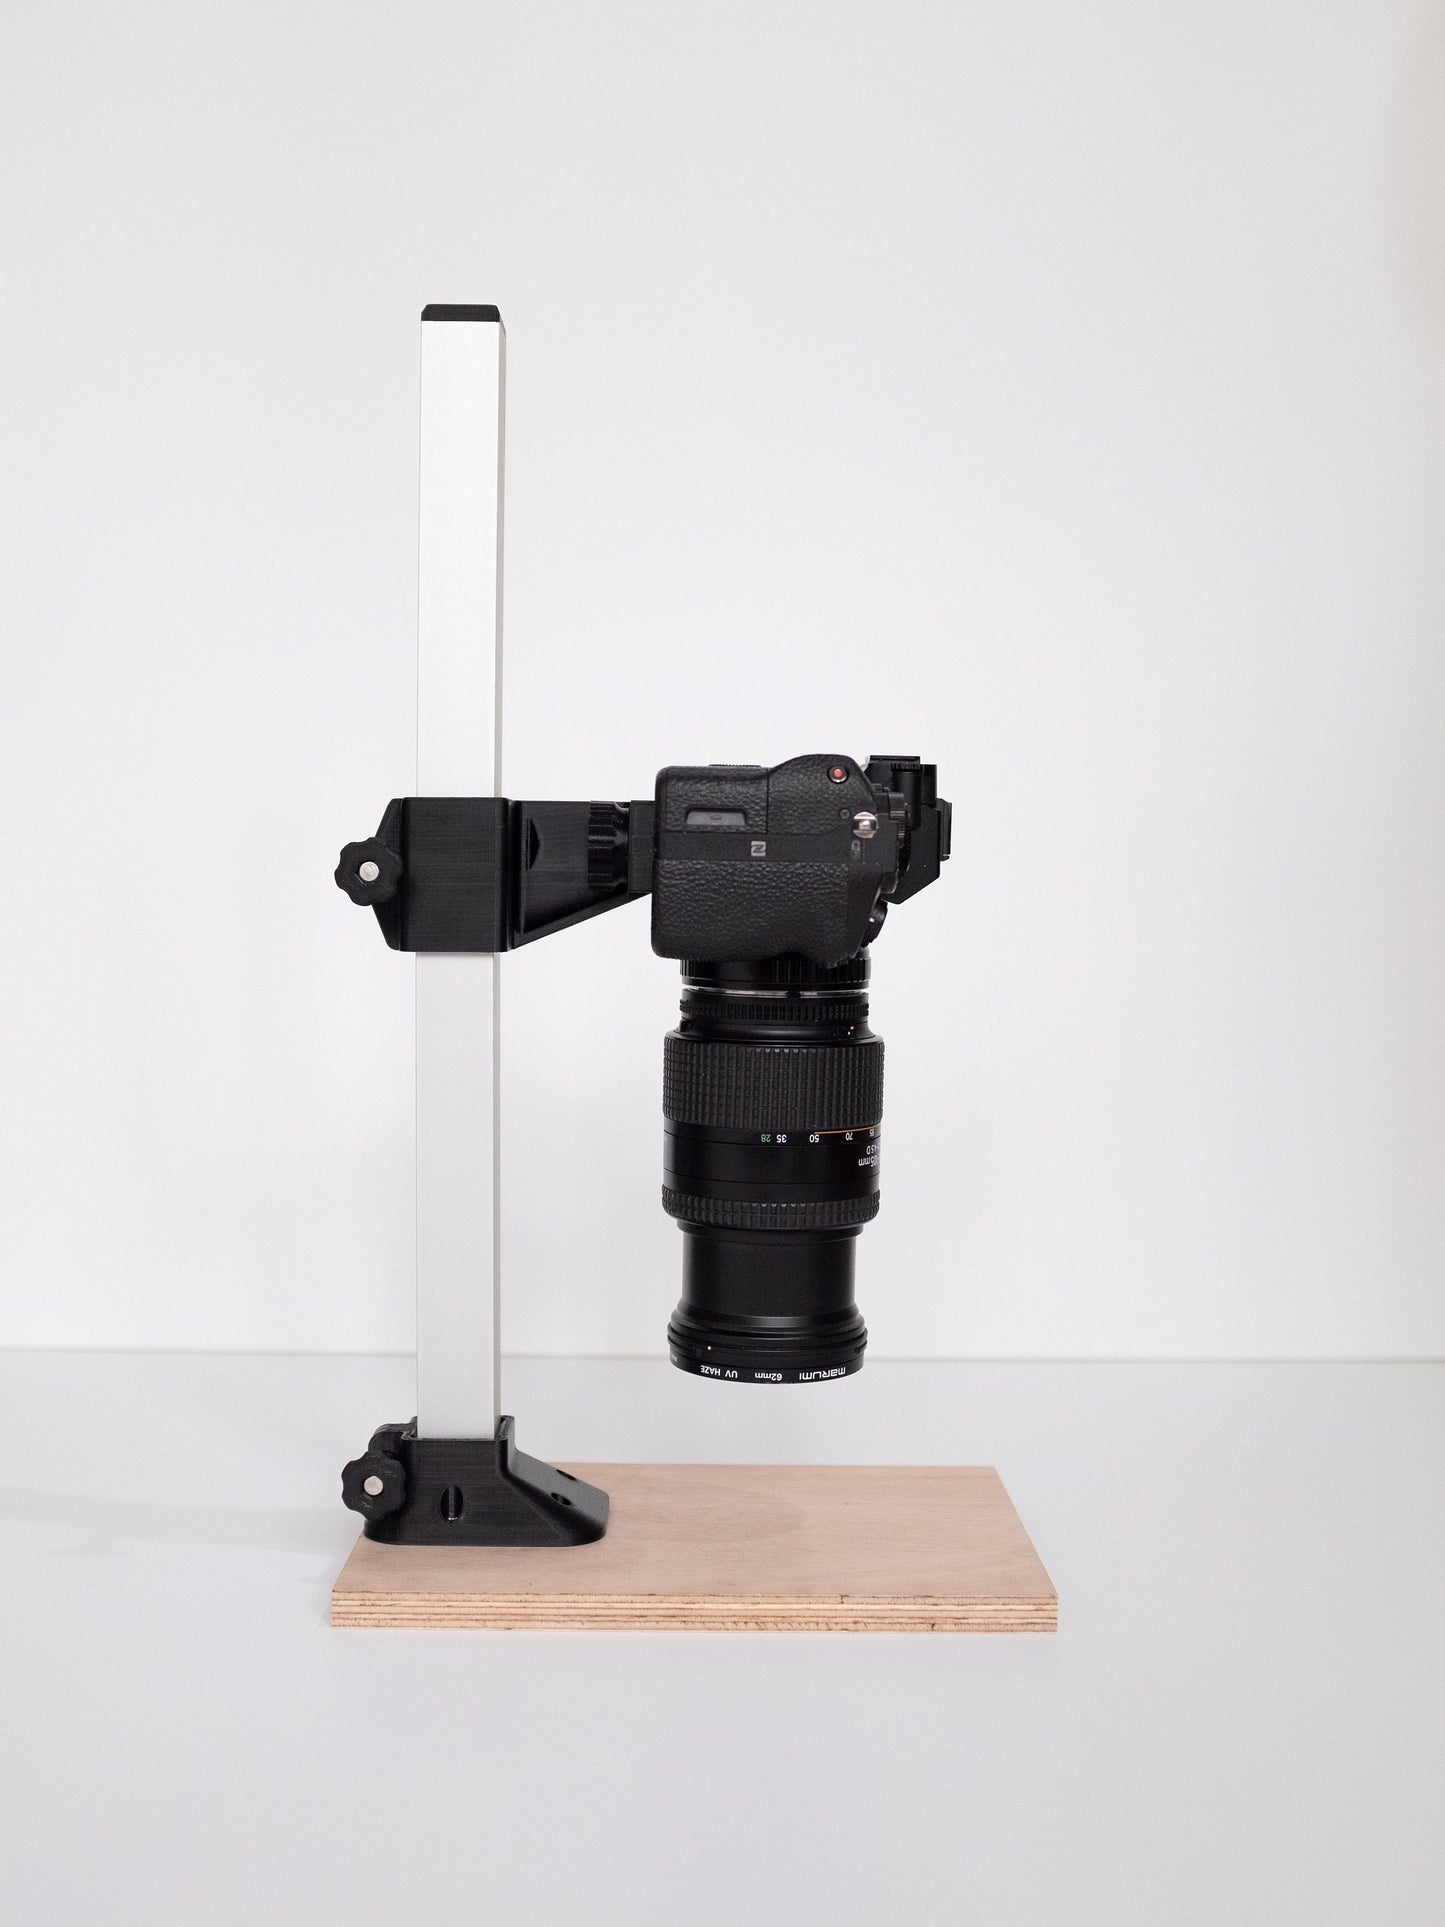 Basic DSLR Film Scanning Set: 35mm Film Carrier + Camera Copy Stand